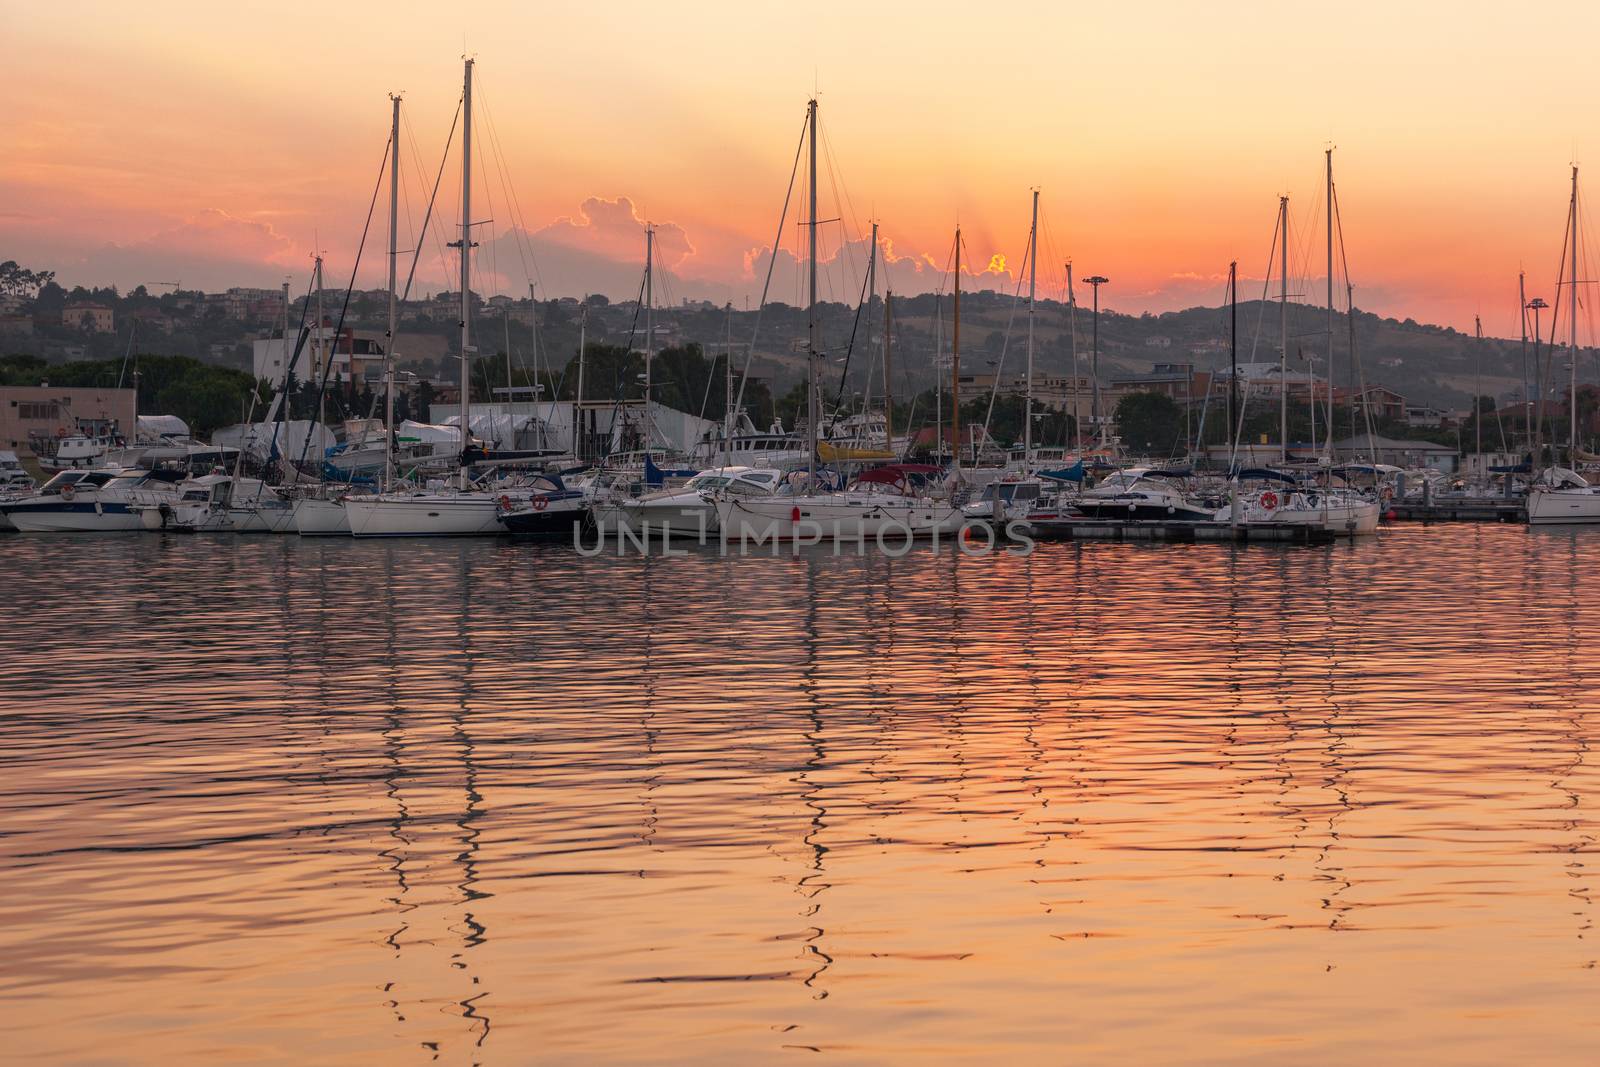 Marina with docked yachts at sunset by zhu_zhu